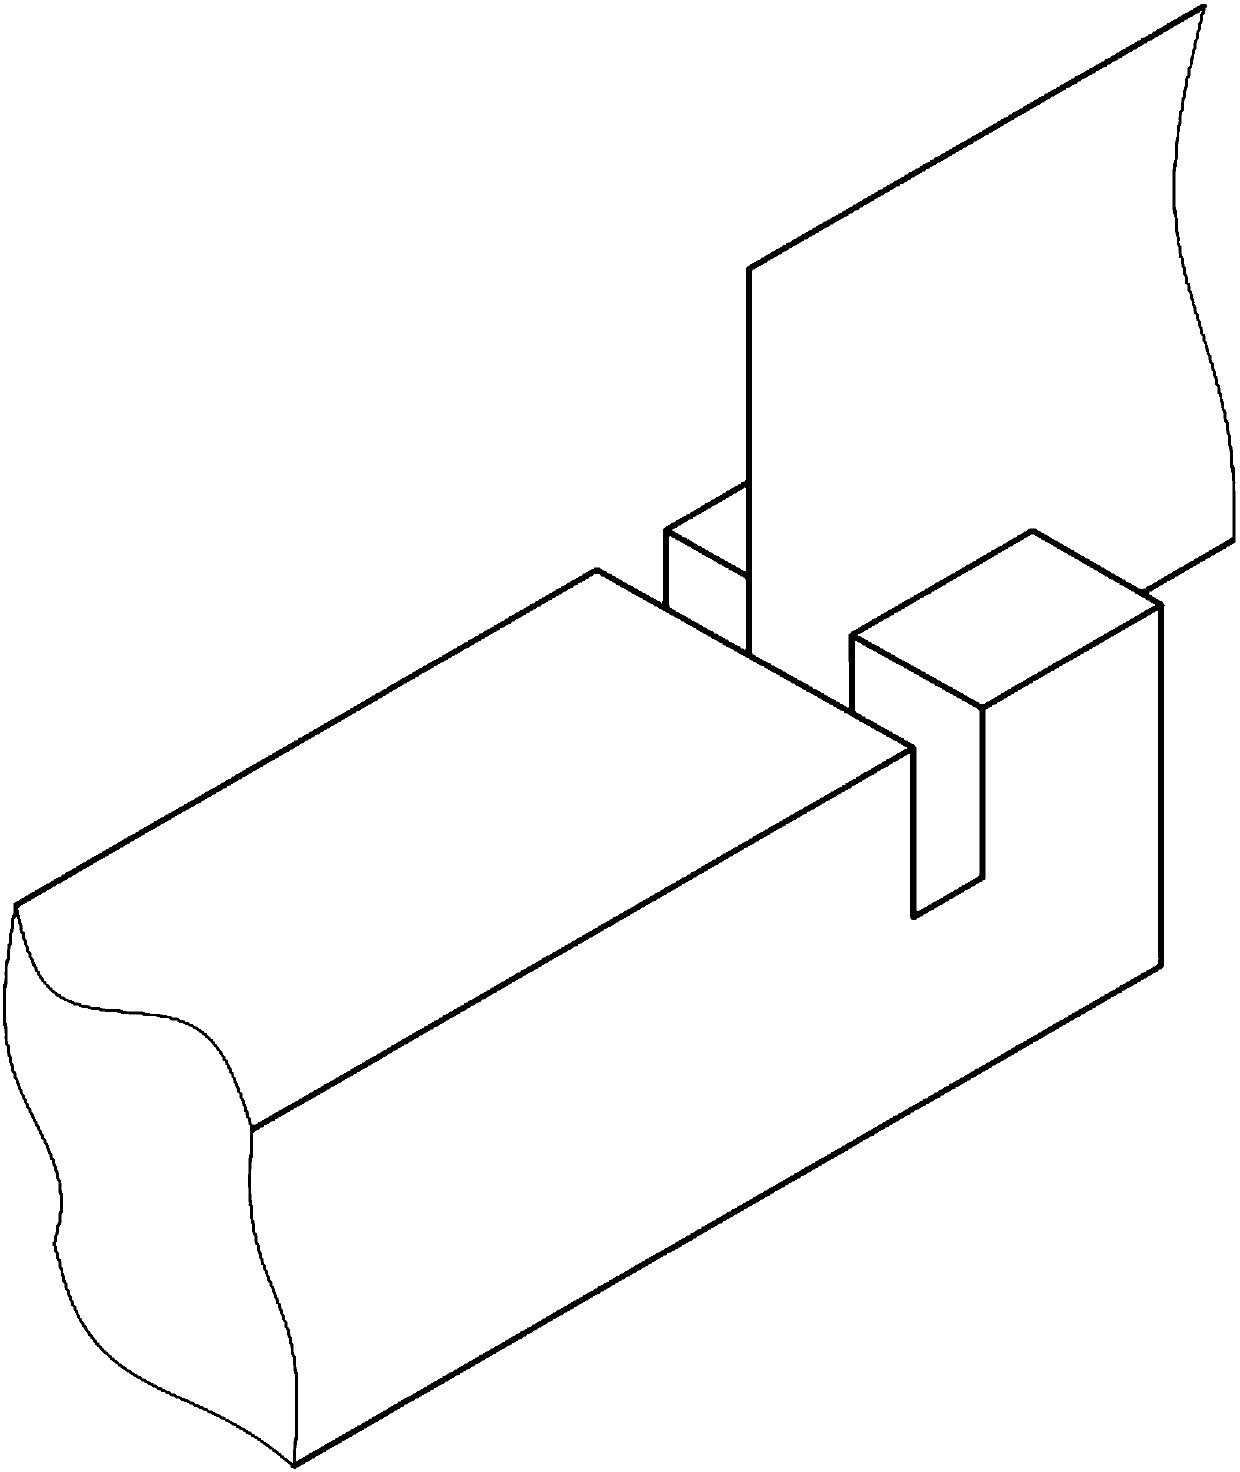 Complex frame positioning assembling jig